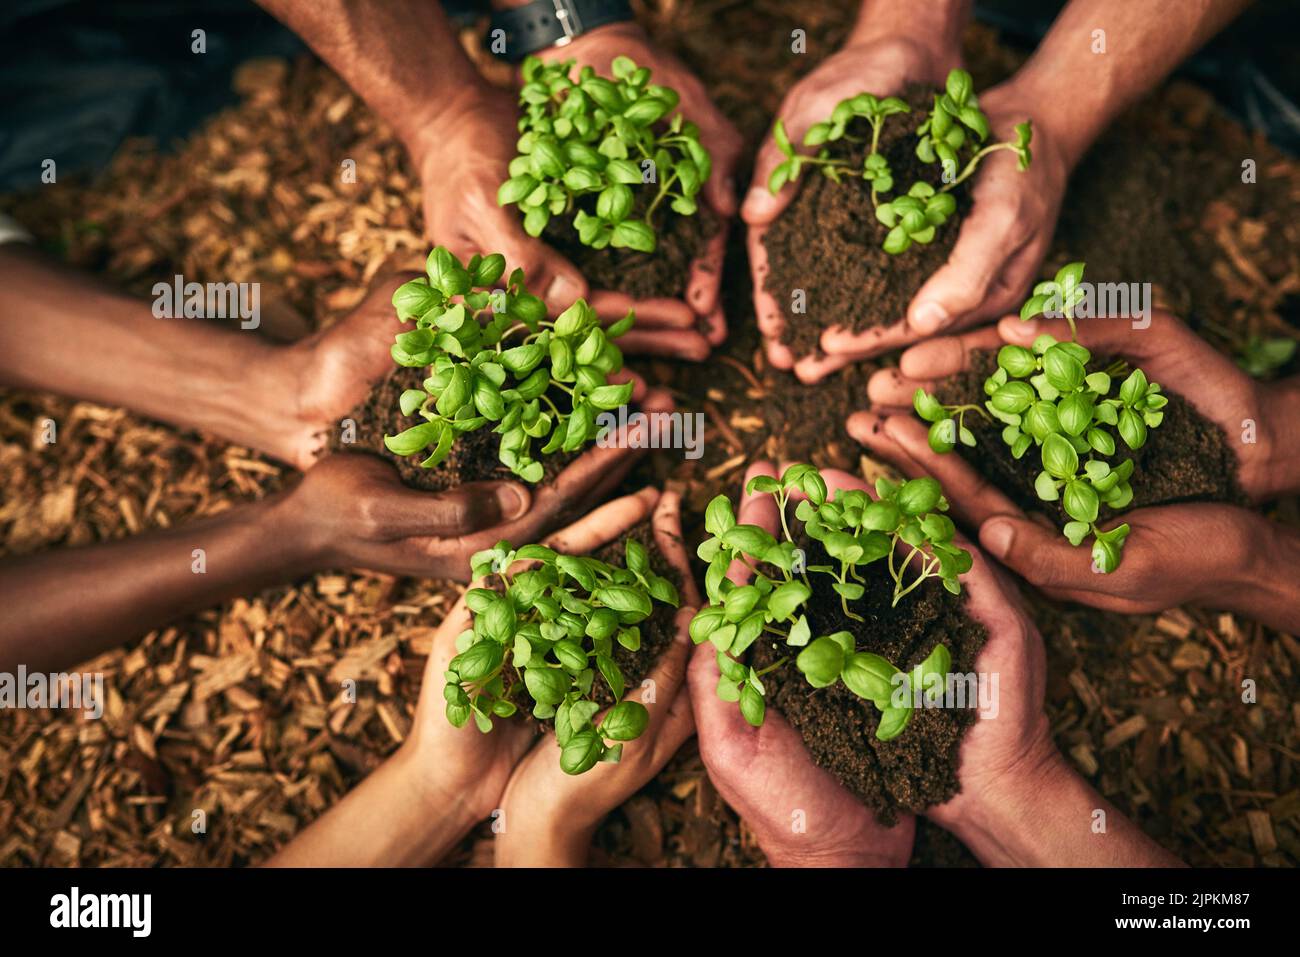 Tenant la croissance dans les paumes de leurs mains. Prise de vue en grand angle d'un groupe de personnes méconnaissables tenant des plantes poussant dans le sol. Banque D'Images